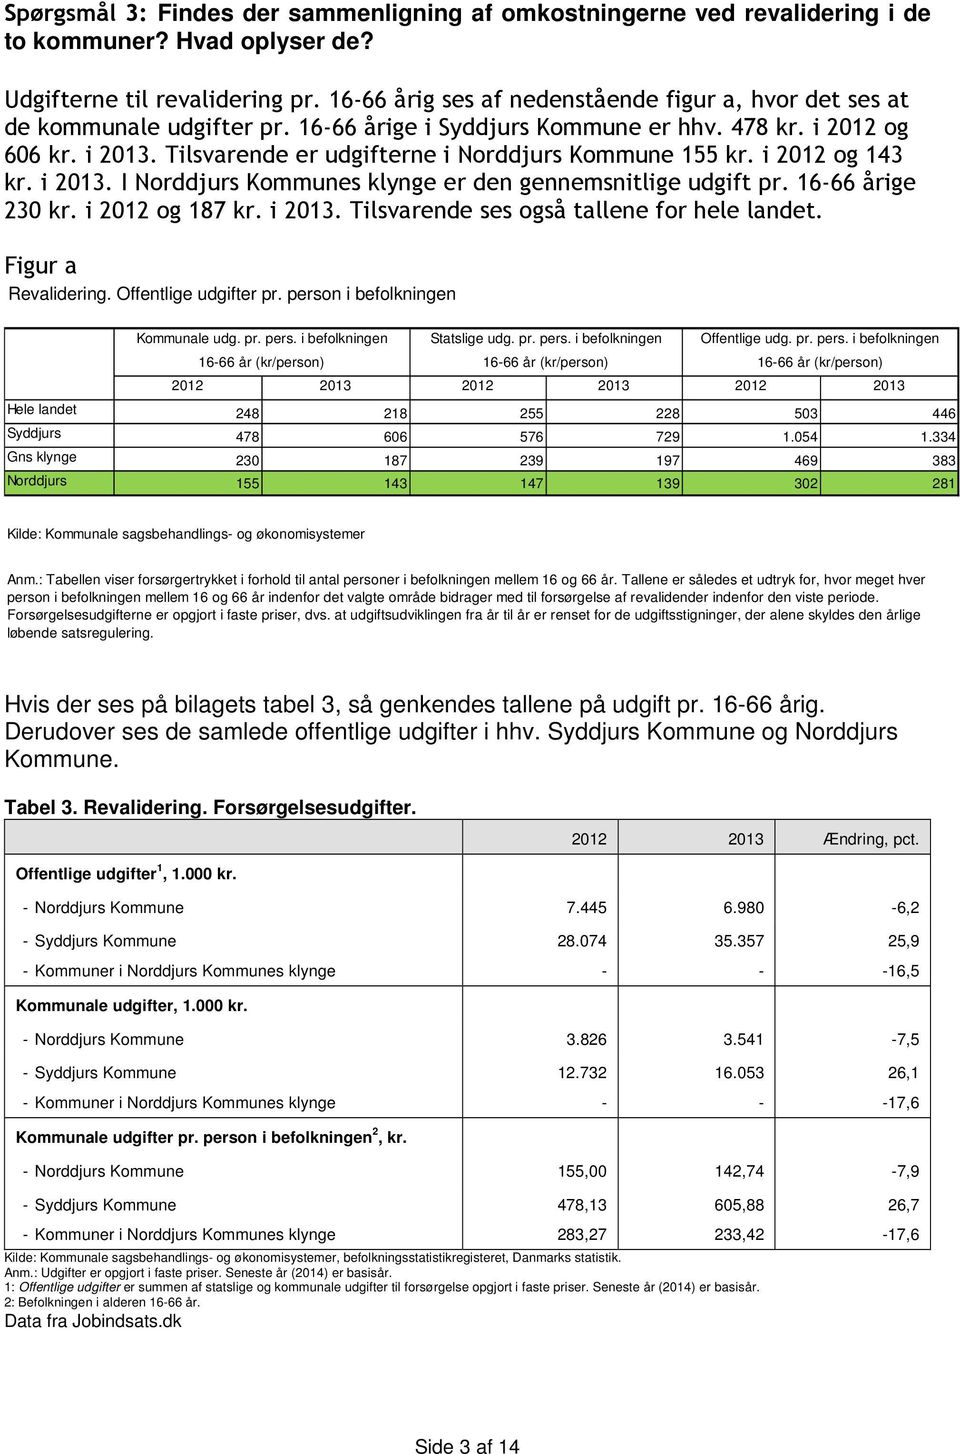 Tilsvarende er udgifterne i Norddjurs Kommune 155 kr. i 2012 og 143 kr. i 2013. I Norddjurs Kommunes klynge er den gennemsnitlige udgift pr. 1666 årige 230 kr. i 2012 og 187 kr. i 2013. Tilsvarende ses også tallene for hele landet.